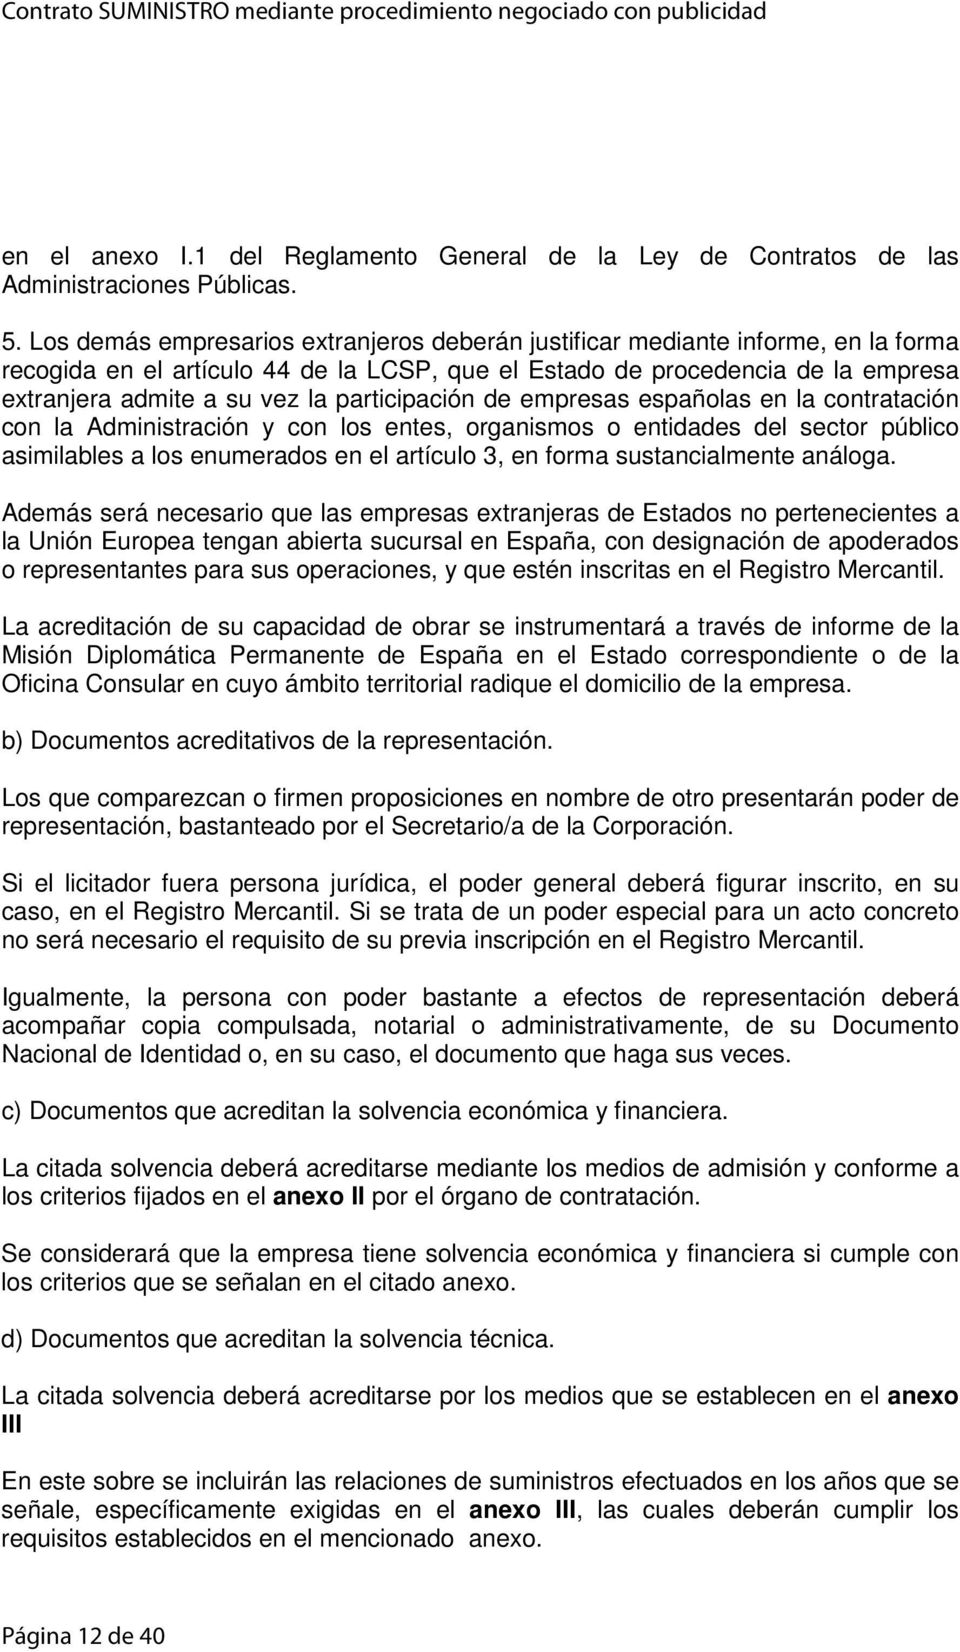 participación de empresas españolas en la contratación con la Administración y con los entes, organismos o entidades del sector público asimilables a los enumerados en el artículo 3, en forma